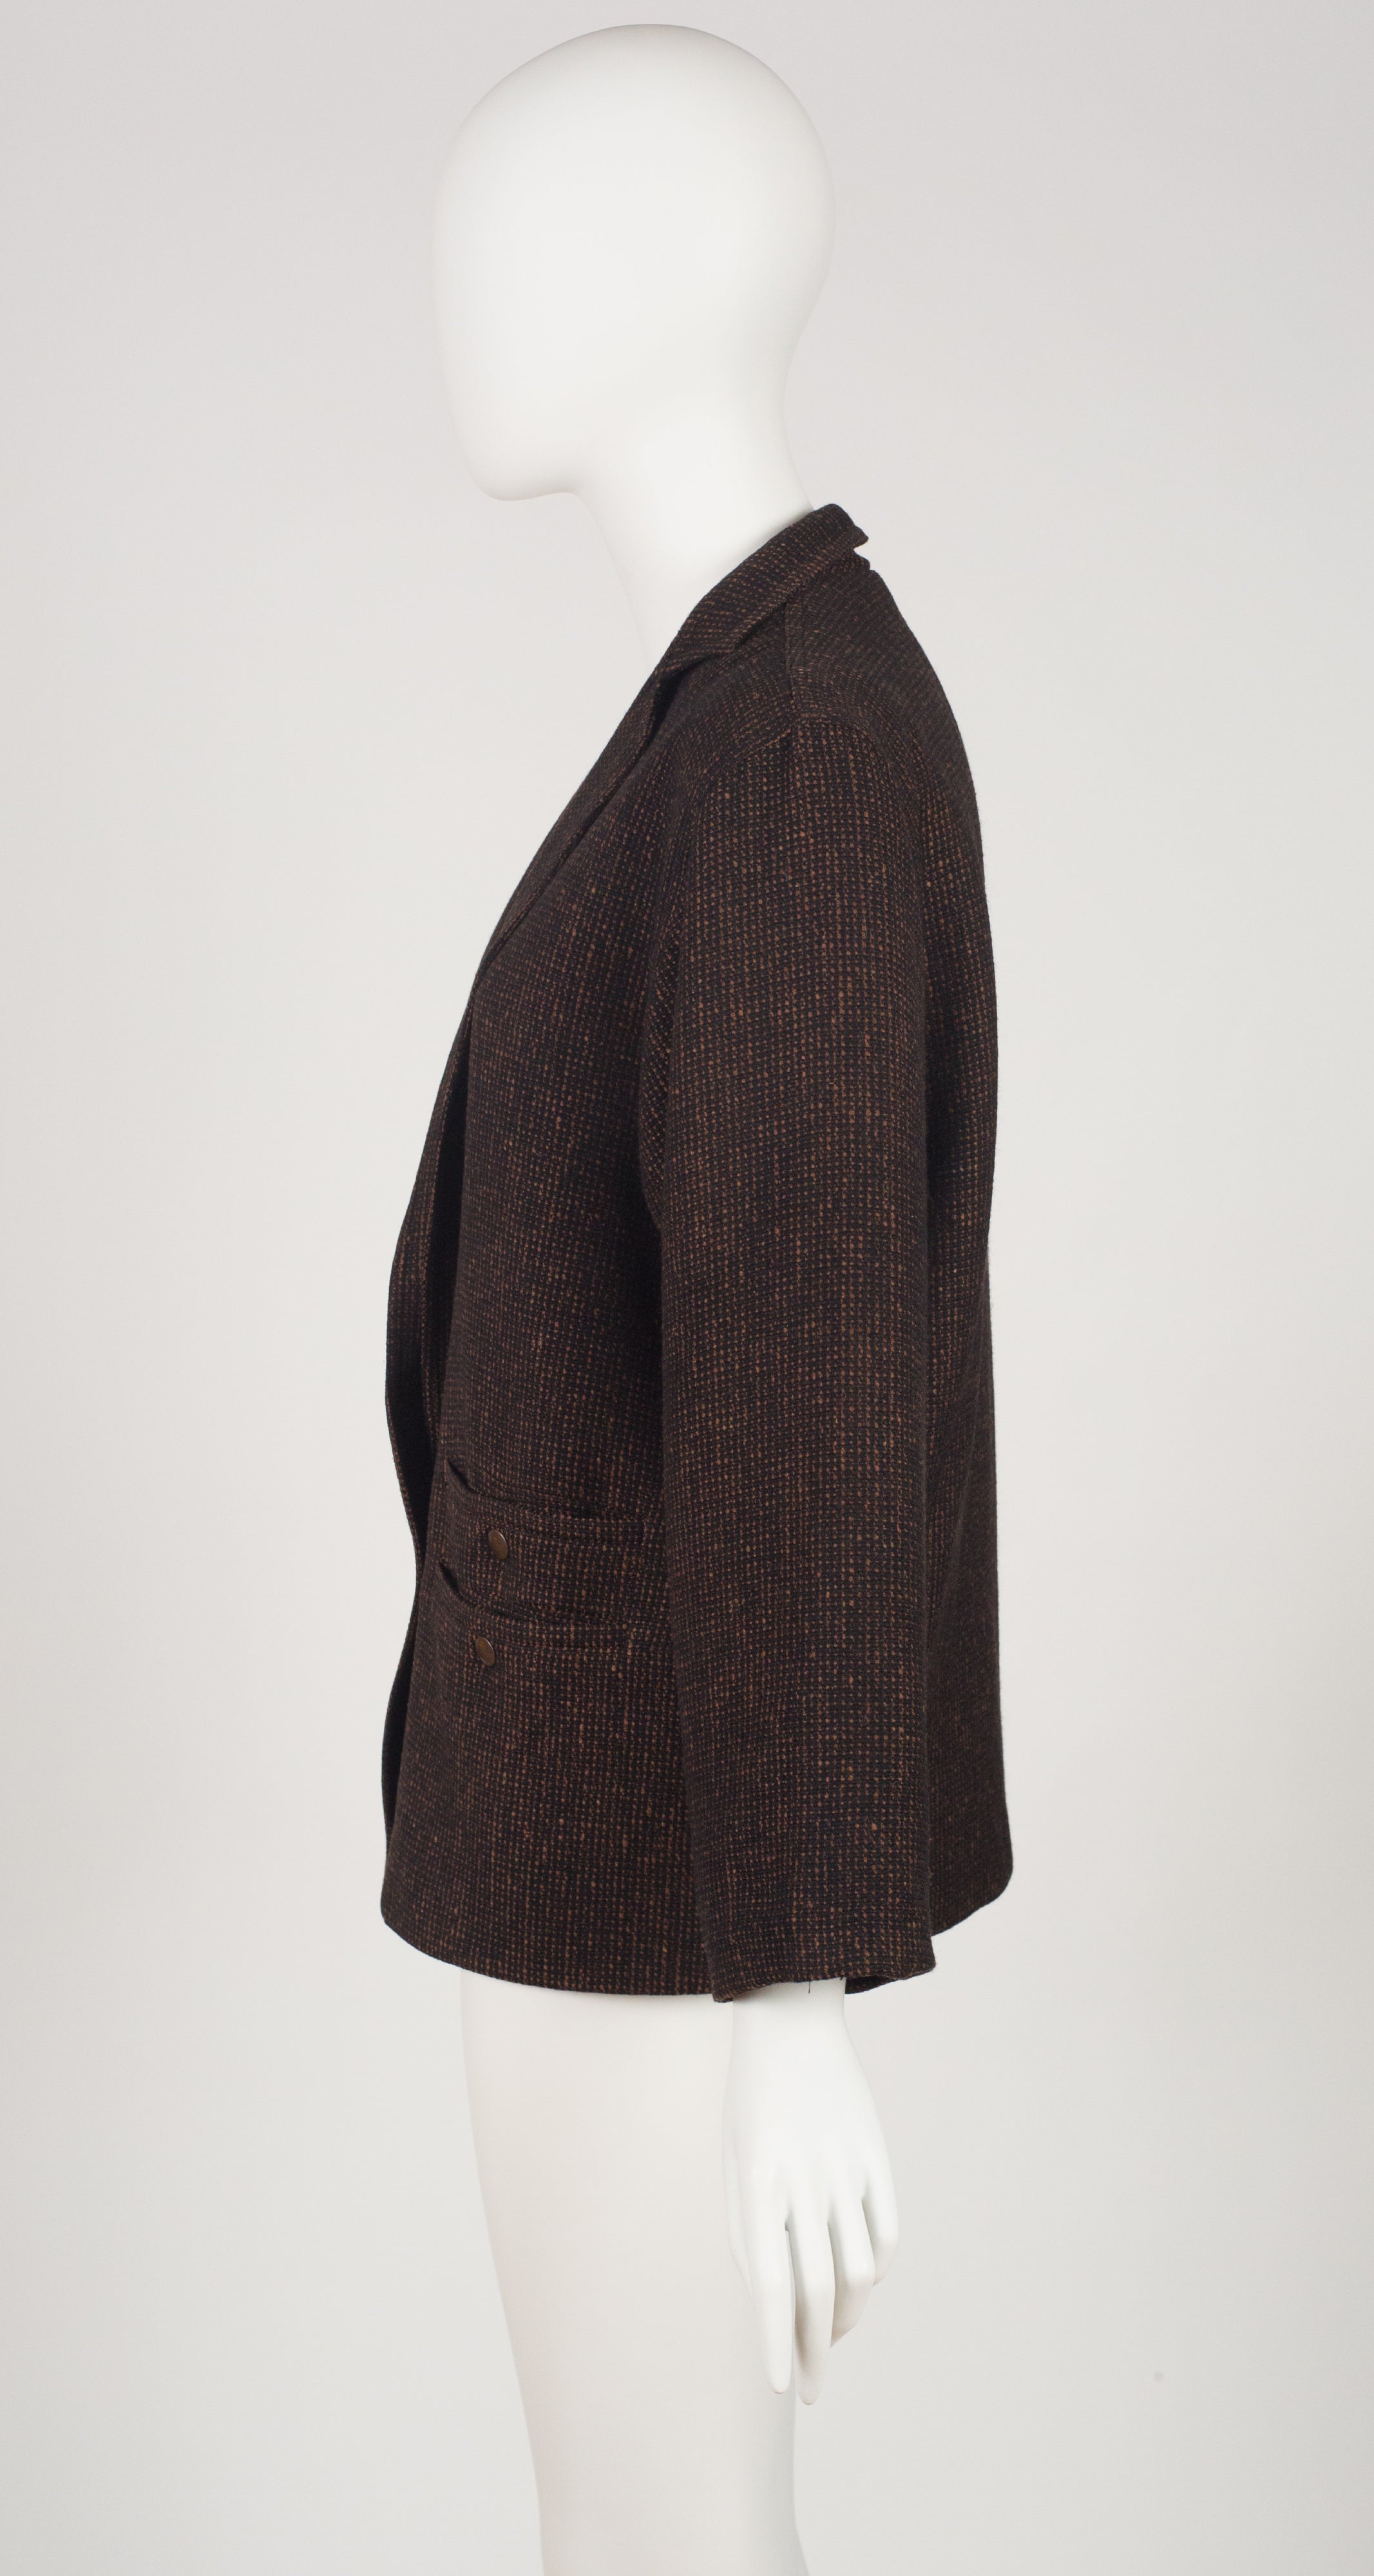 1980s Brown & Black Tweed Wool Blazer